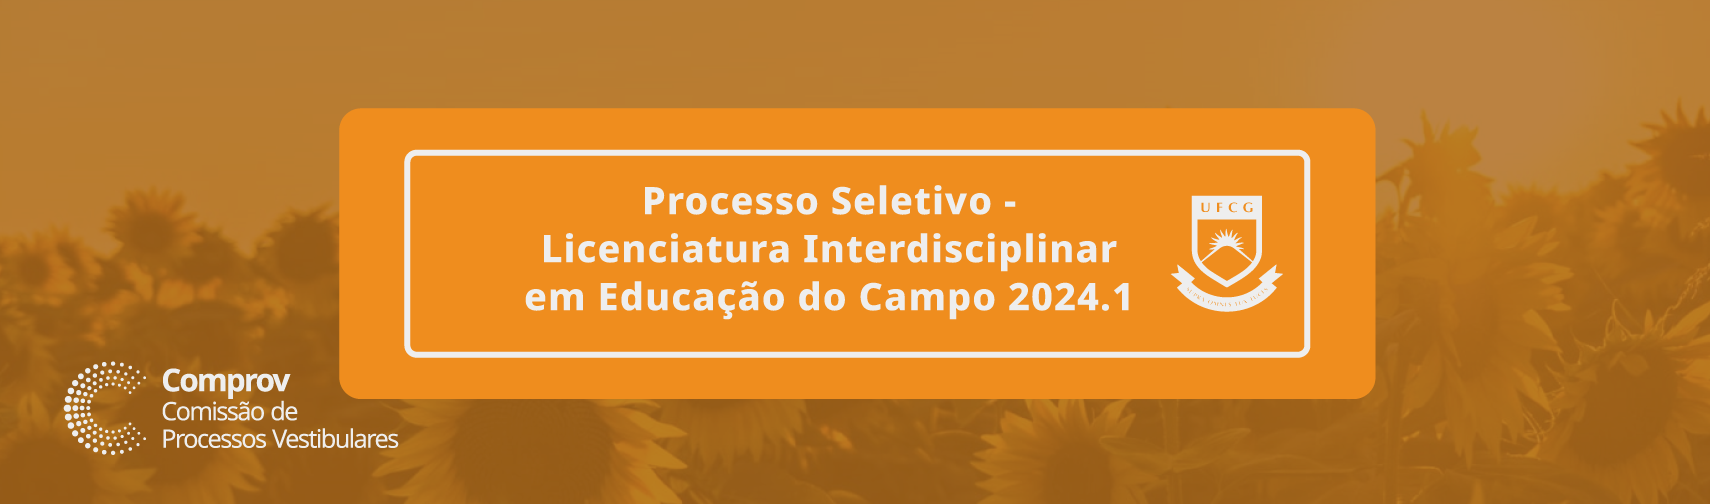 Processo Seletivo - Licenciatura Interdisciplinar em Educação do Campo